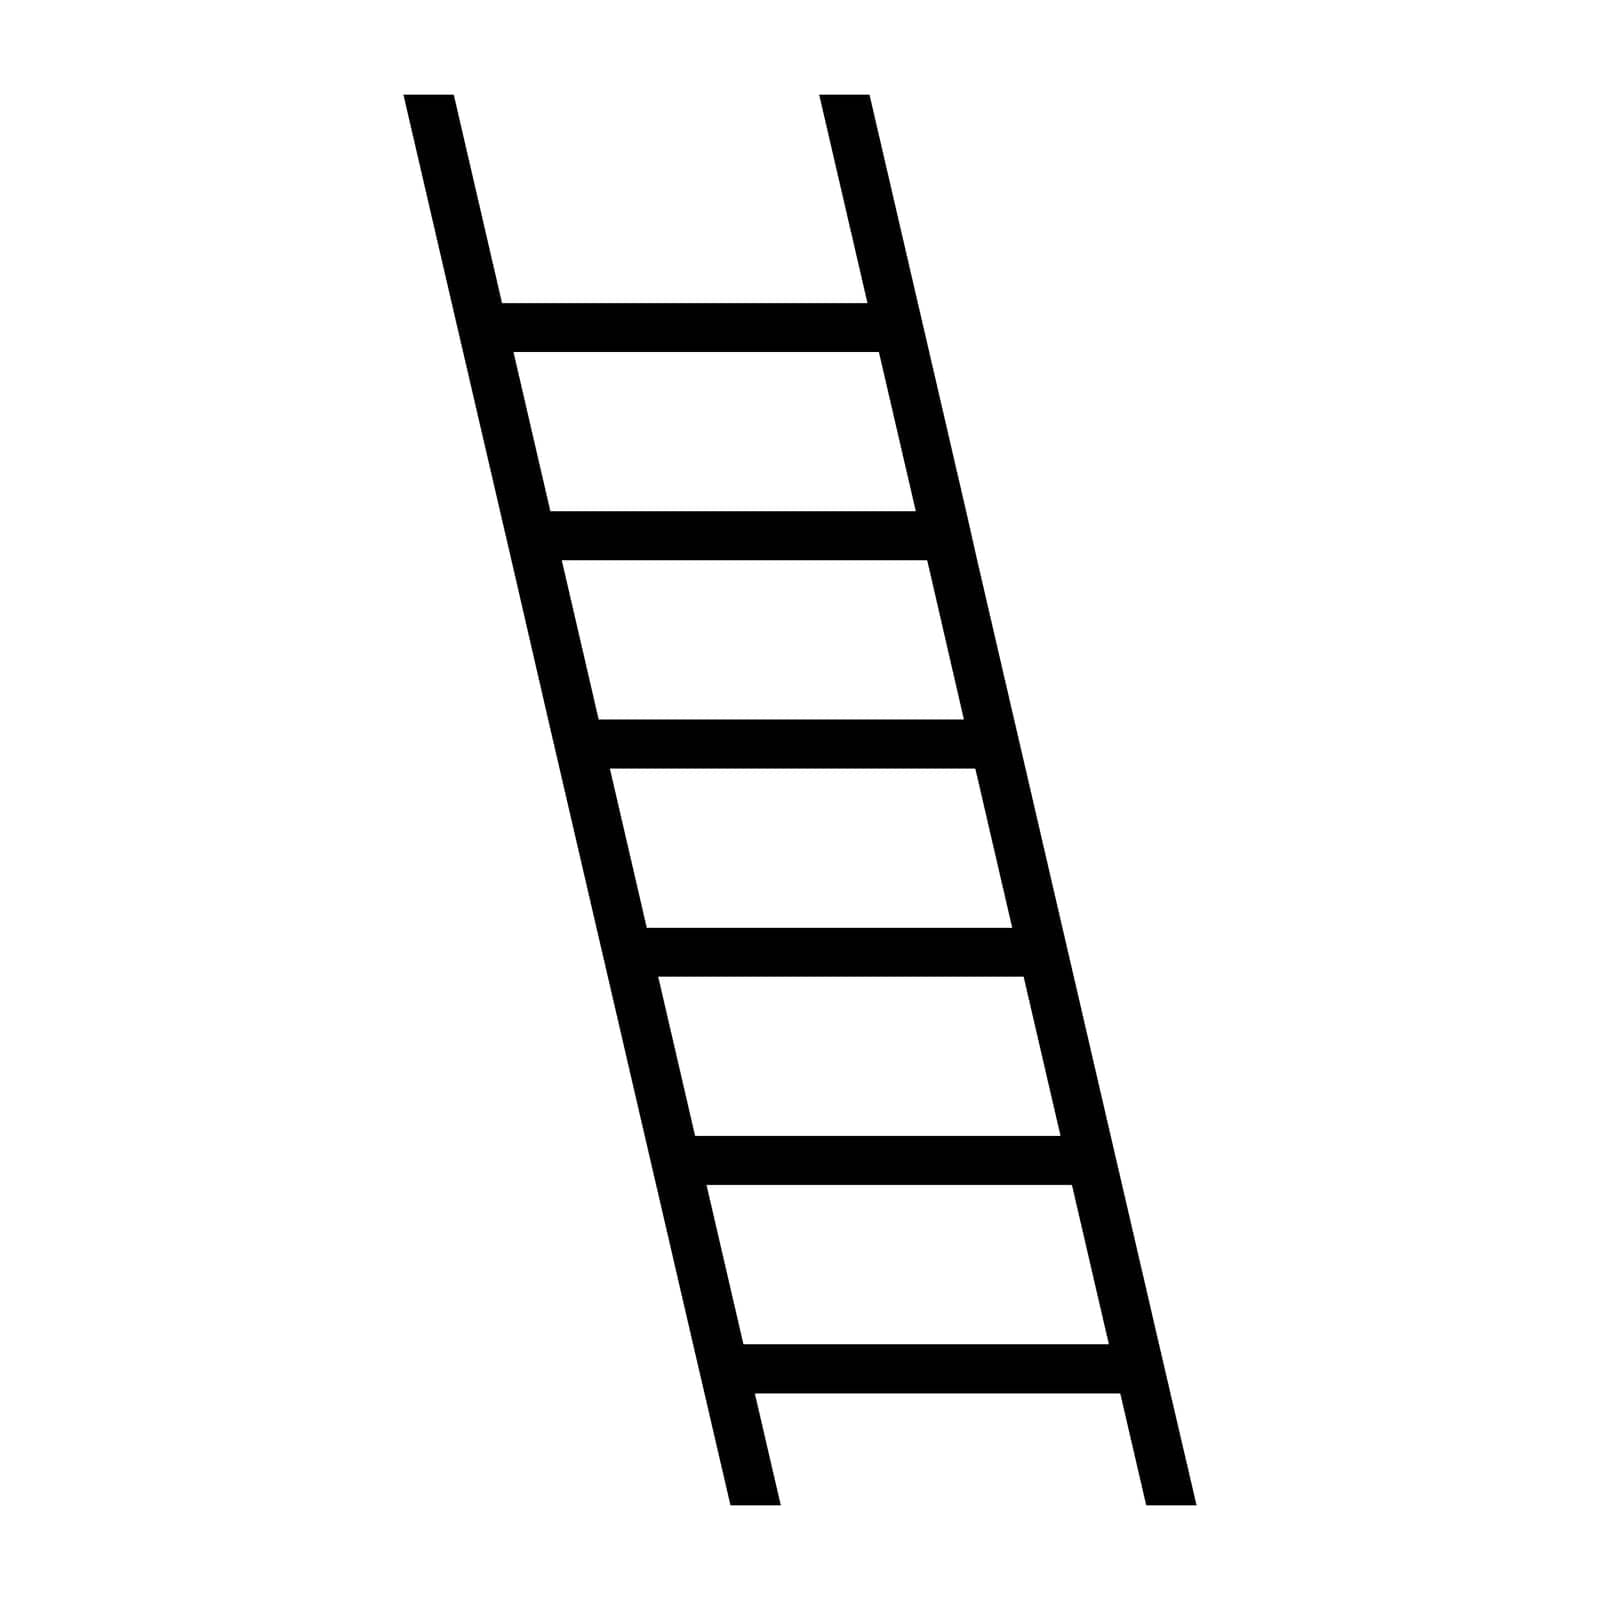 Ladder black vector icon on white background by AdamLapunik